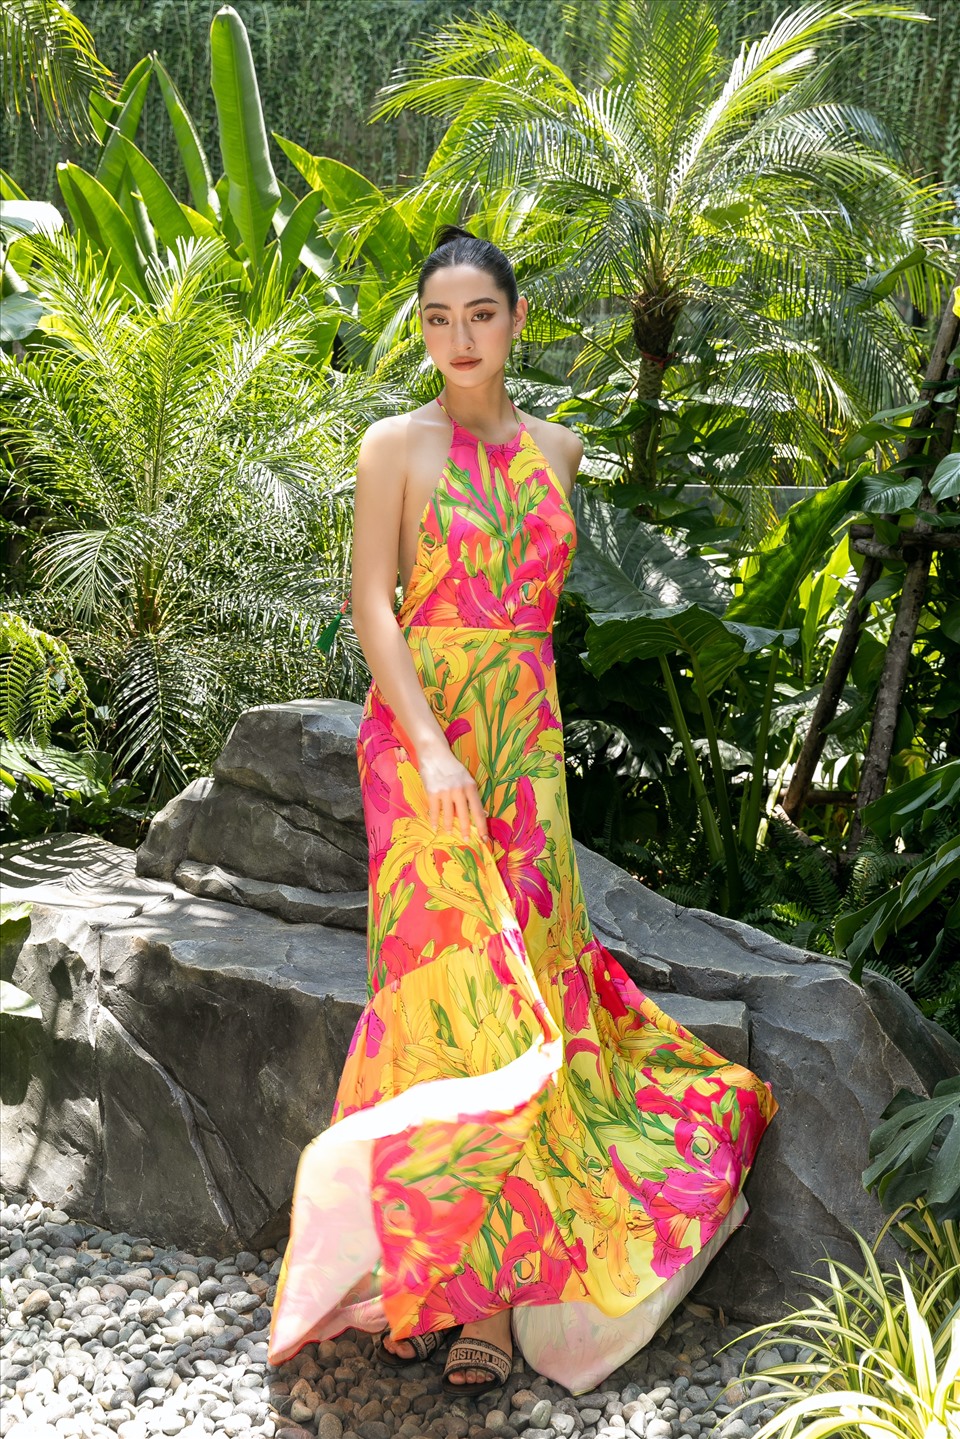 Trải qua gần 3 năm nhiệm kỳ, Hoa hậu Lương Thuỳ Linh đã gặt hái nhiều thành công sau khi mang về thành tích Top 12 tại cuộc thi Miss World 2019. Cô nàng luôn được ưu ái “chọn mặt gửi vàng” bởi các nhà thiết kế hàng đầu trong nước cũng như các thương hiệu thời trang quốc tế.